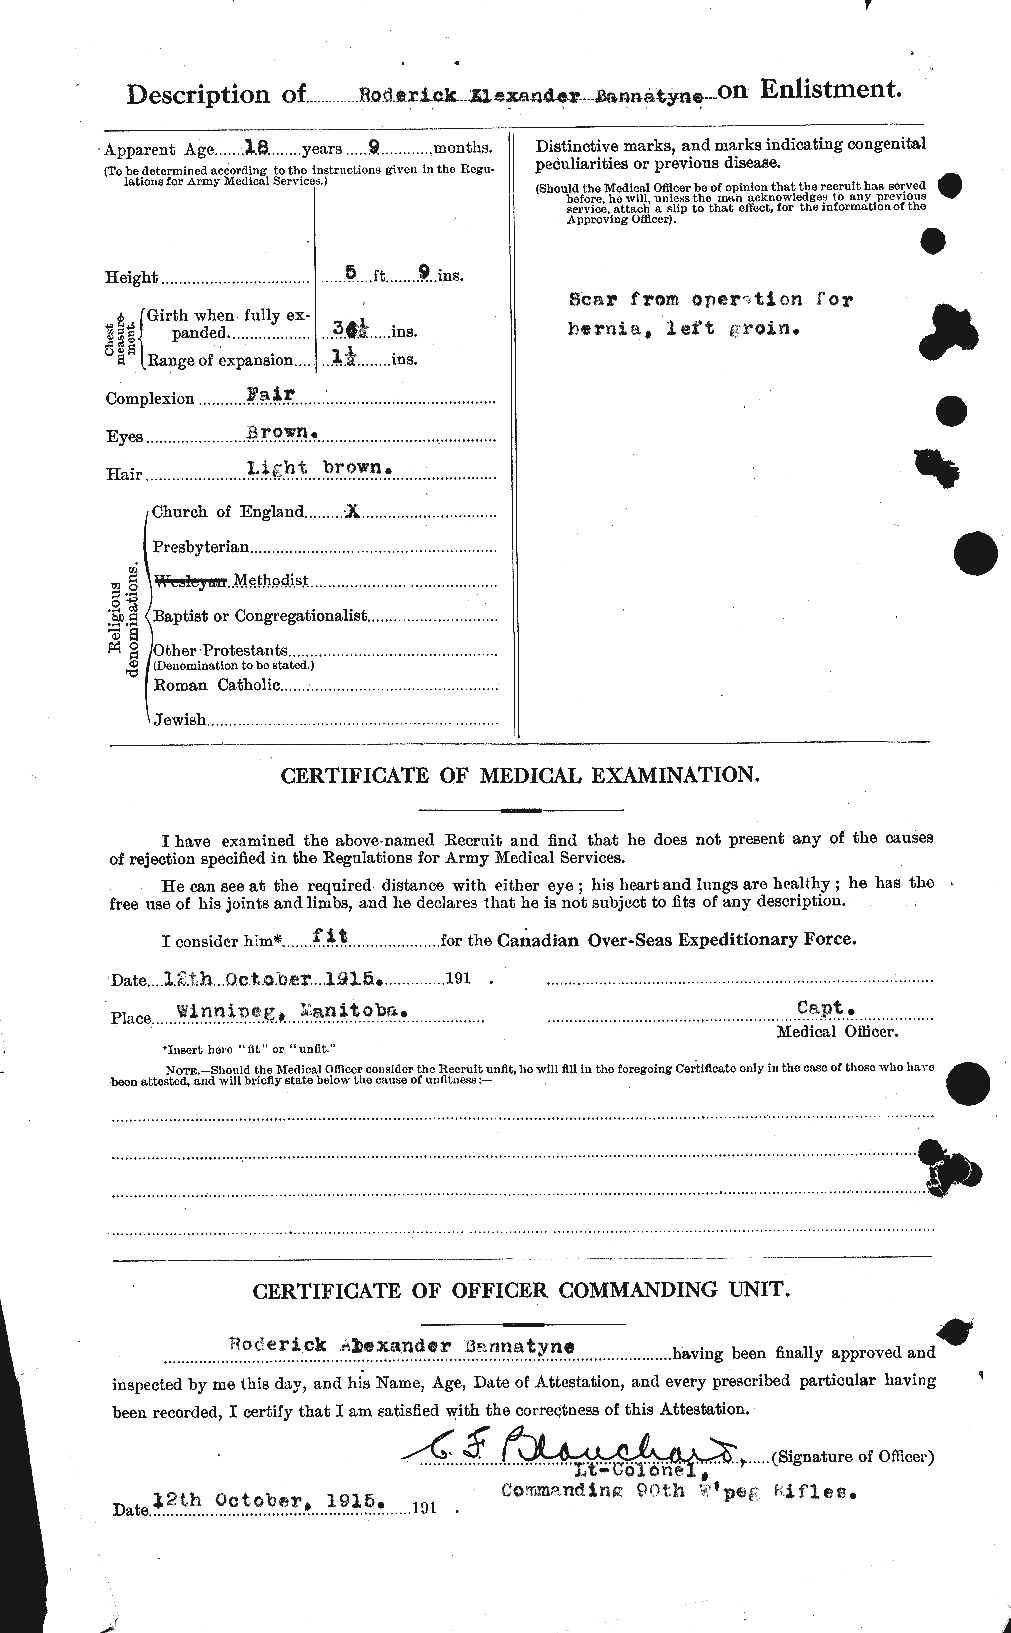 Dossiers du Personnel de la Première Guerre mondiale - CEC 224893b